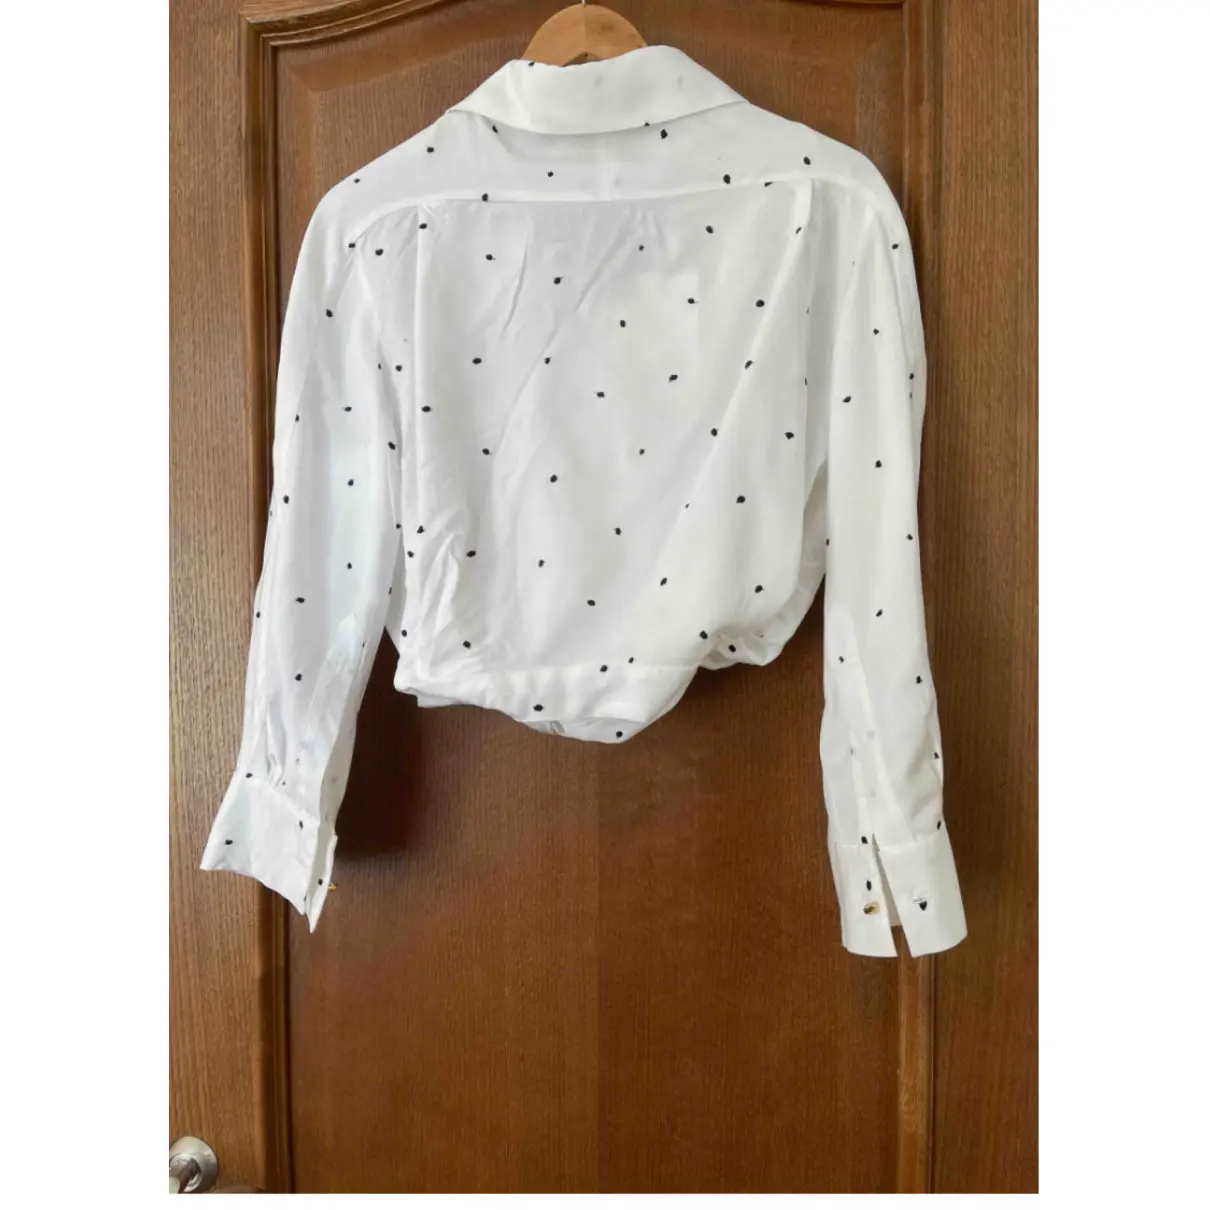 Buy Jacquemus La Riviera blouse online